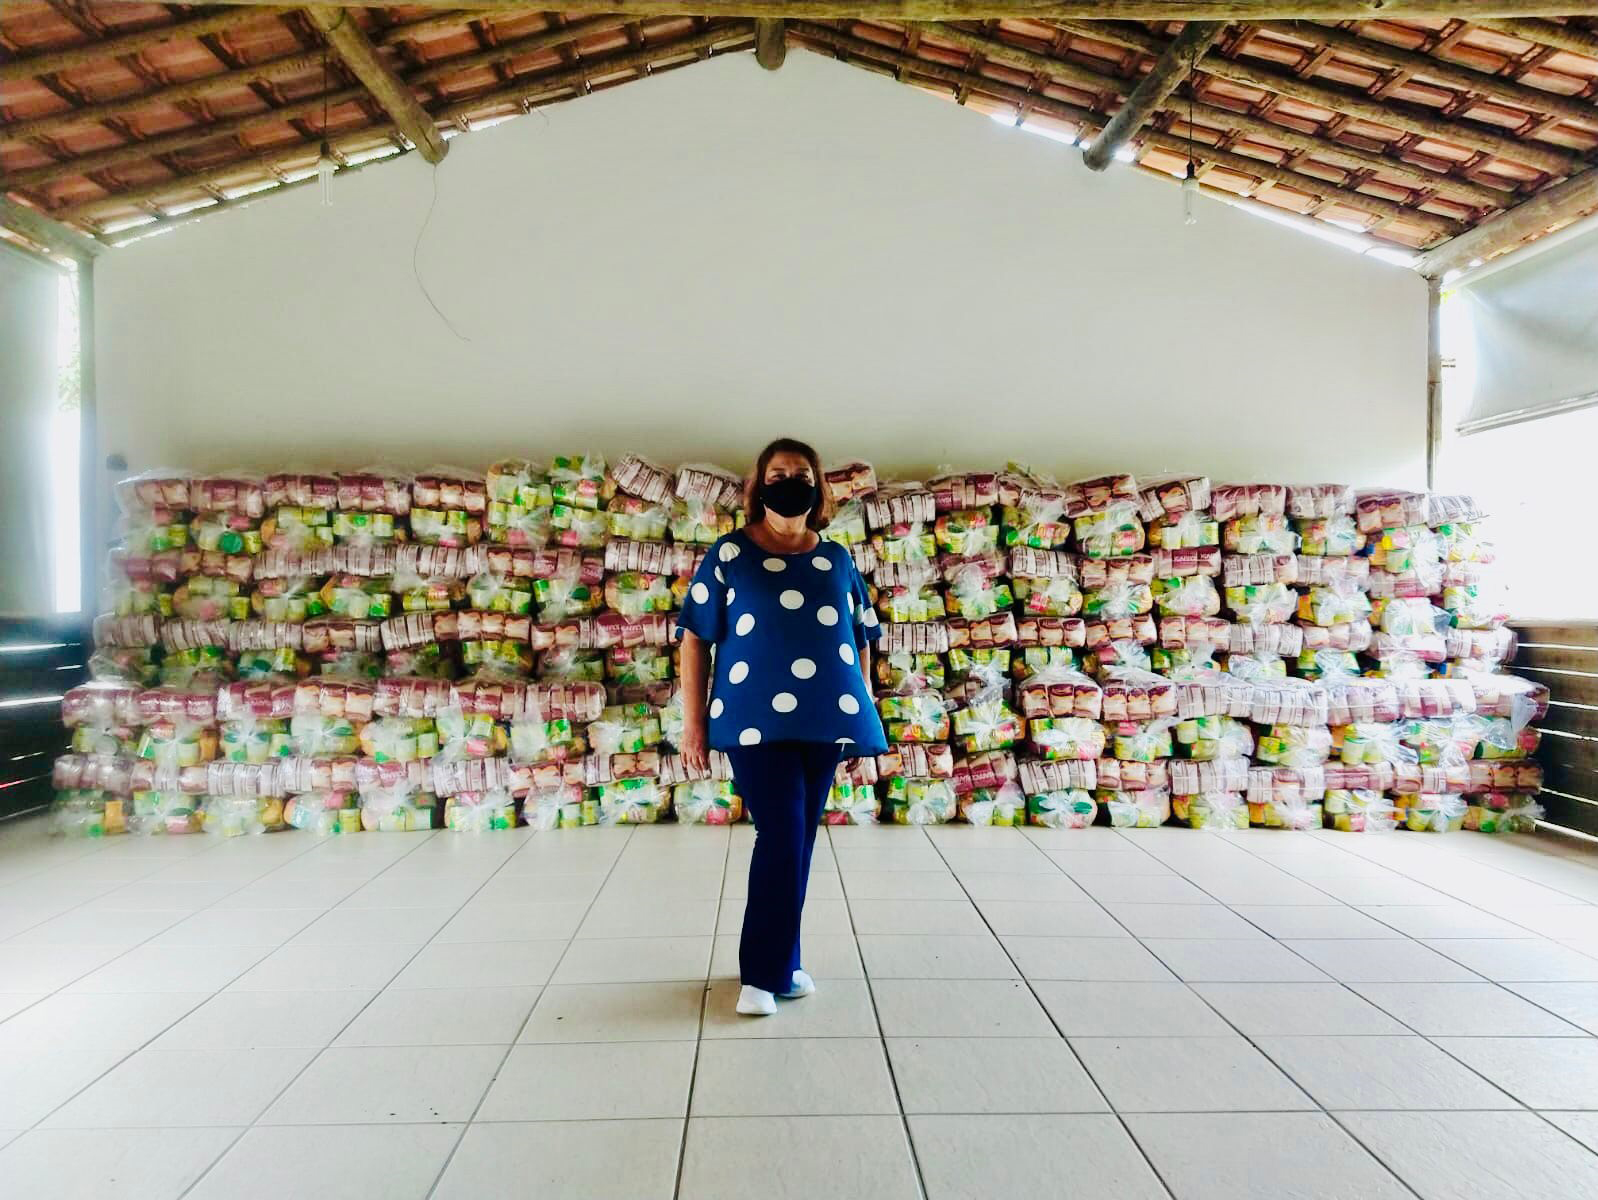 Em setembro sero distribudas 300 cestas bsicas para famlias em situao de vulnerabilidade social. (Foto: Divulgao)